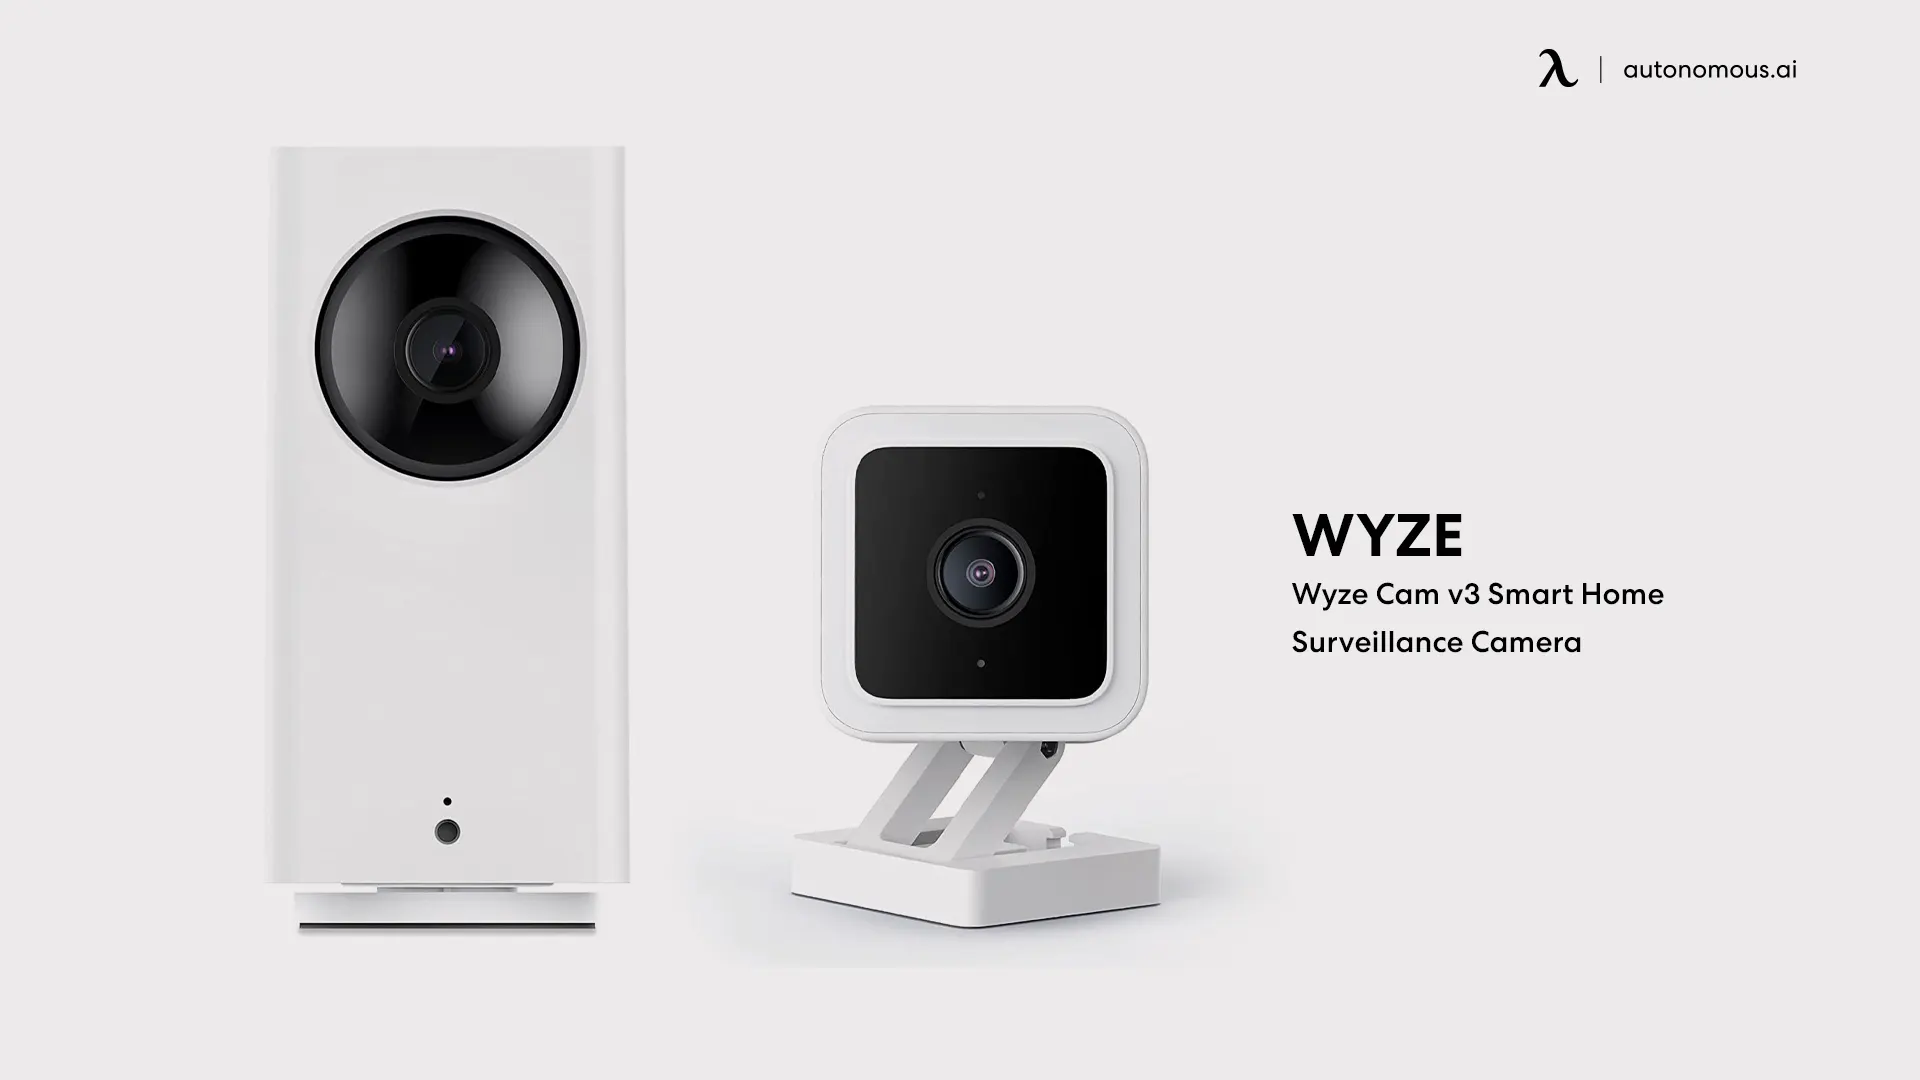 Wyze Cam v3 Smart Home Surveillance Camera